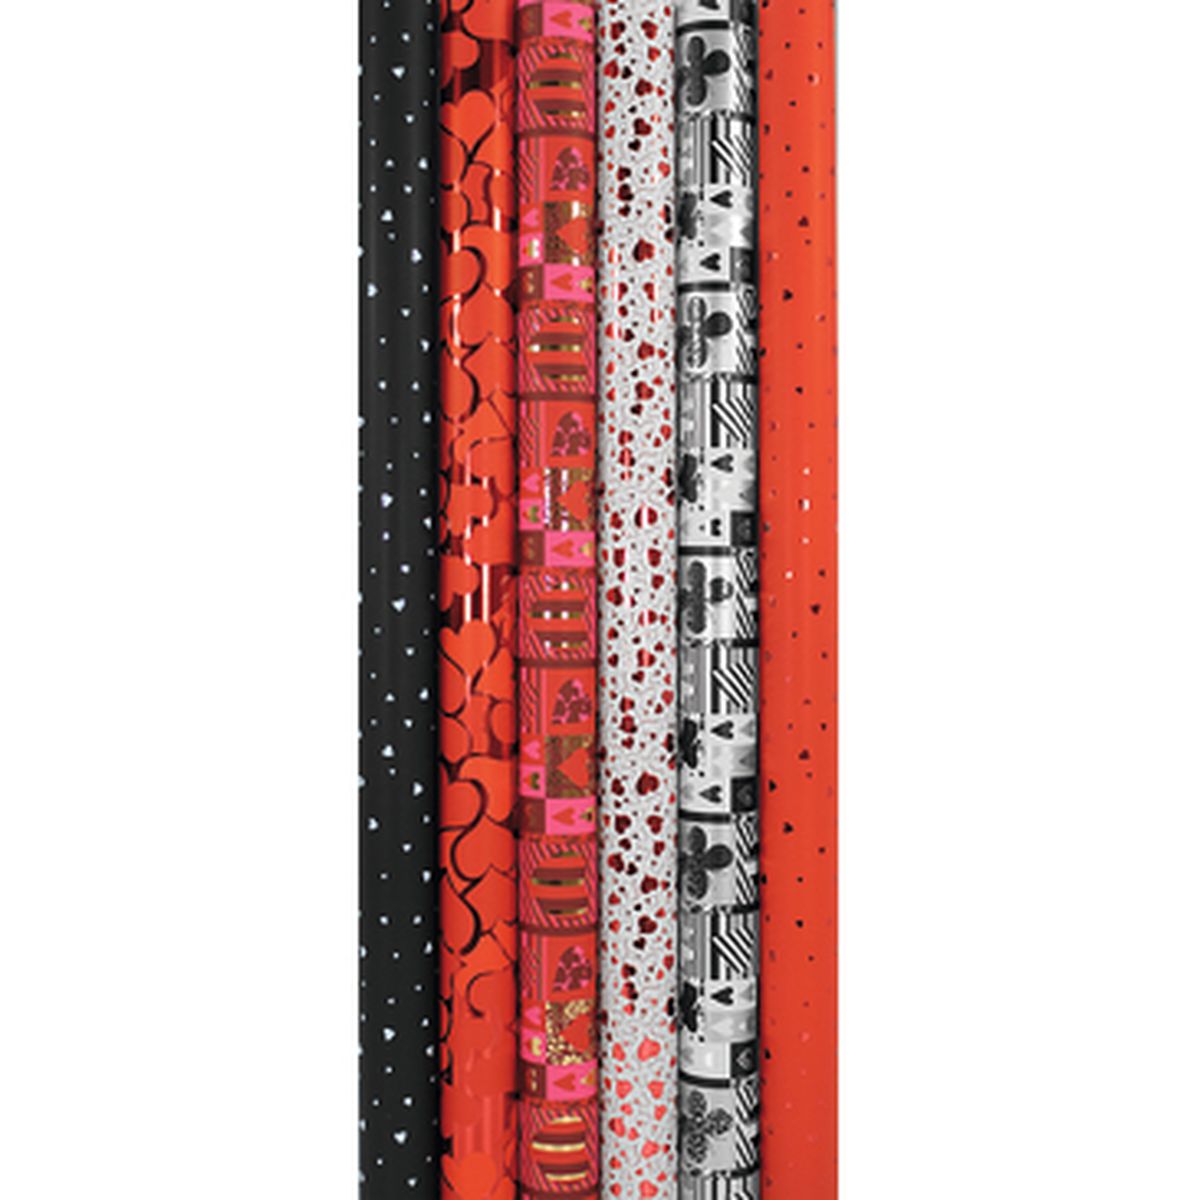 CLAIREFONTAINE Rouleau papier cadeau Arabesque Premium 80g. Dimensions 50 x  0,70m. Coloris Rouge motif or